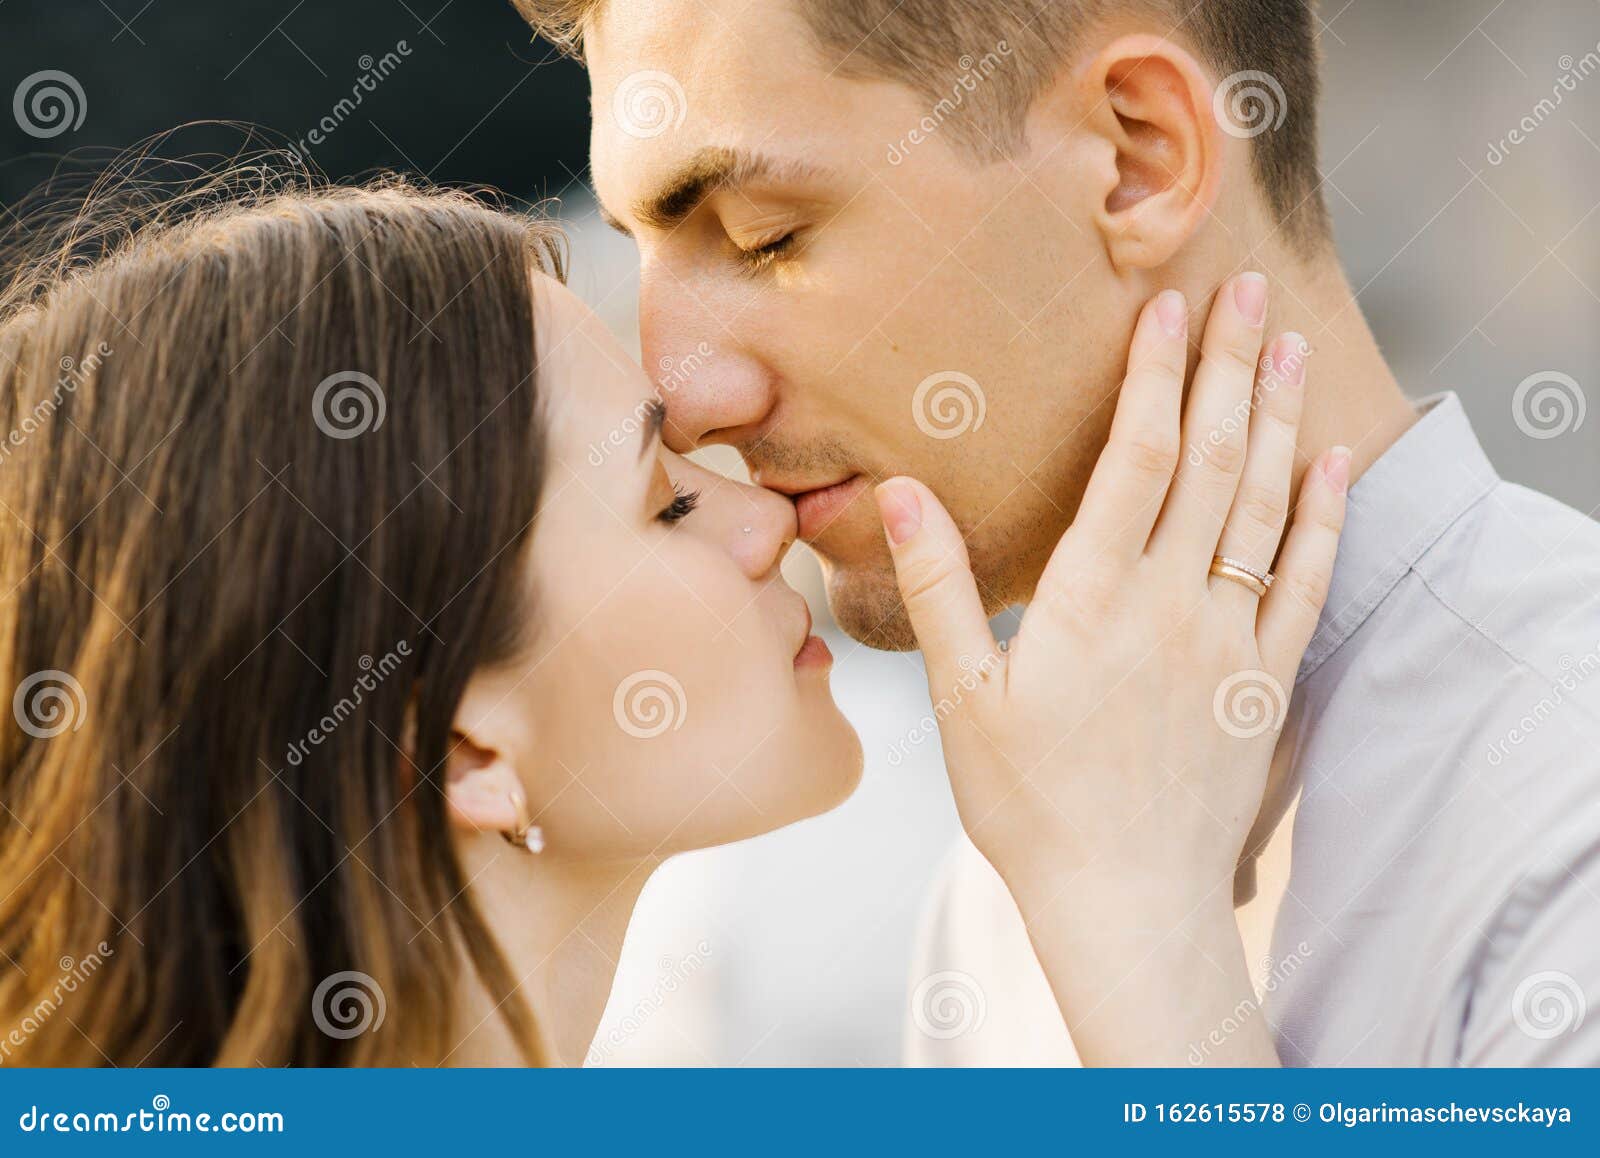 У меня есть теория поцелуя. Парень и девушка нос к носу. Поцелуй в носик. Целует руку. Парень целует девушку в носик.